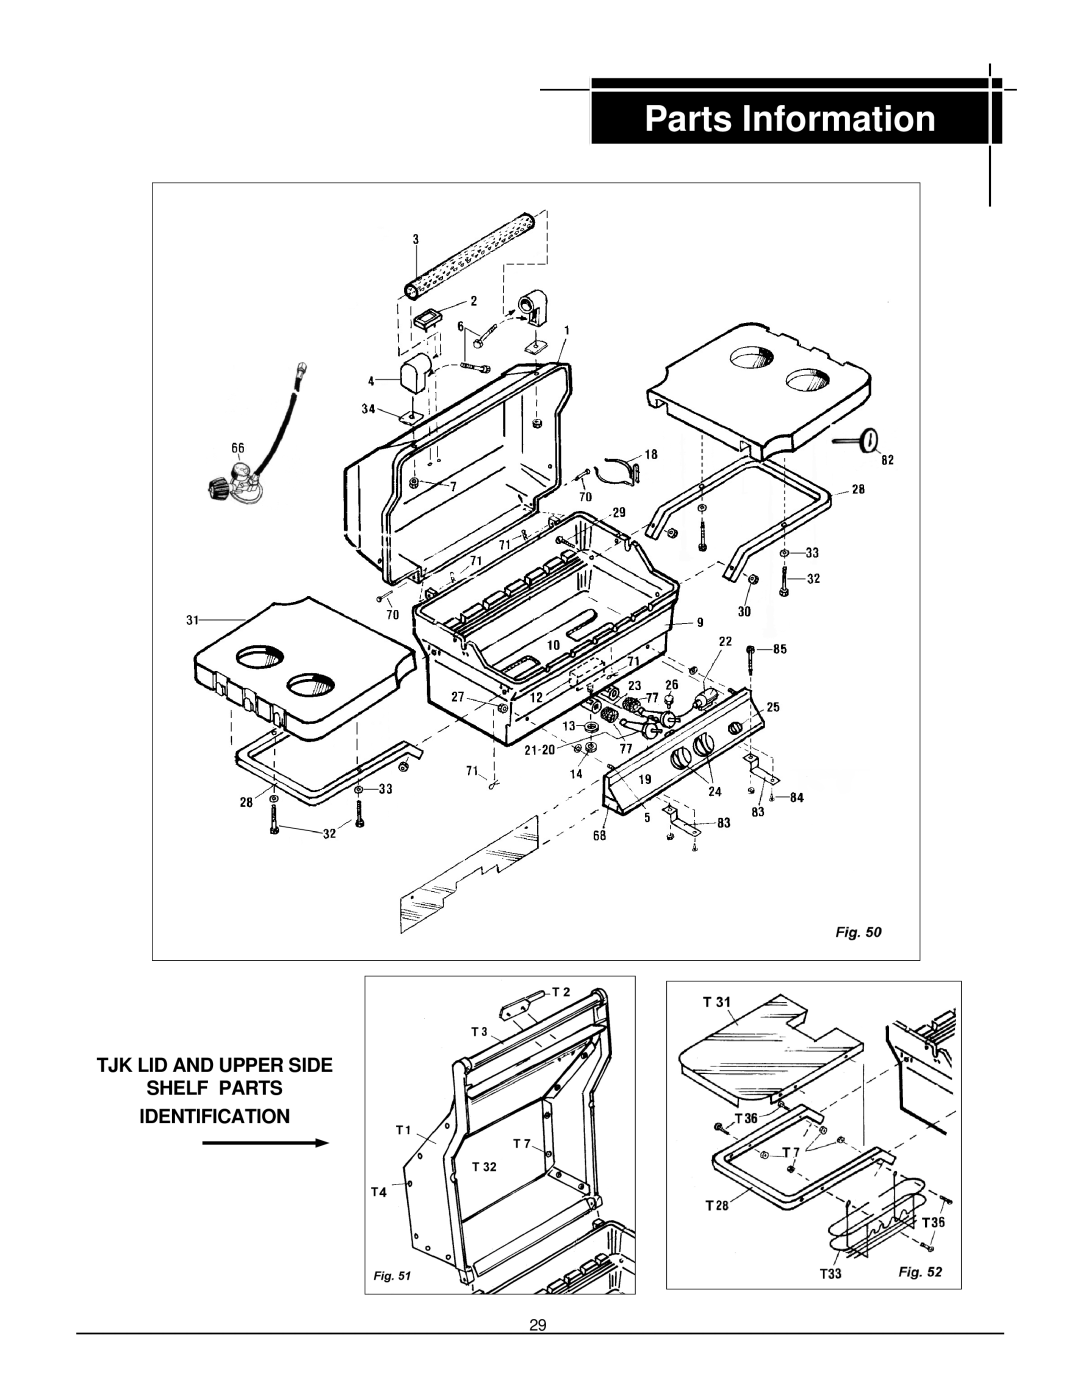 MHP JNR, WNK, TJK owner manual Tjk Lid And Upper Side Shelf Parts Identification, Parts Information 